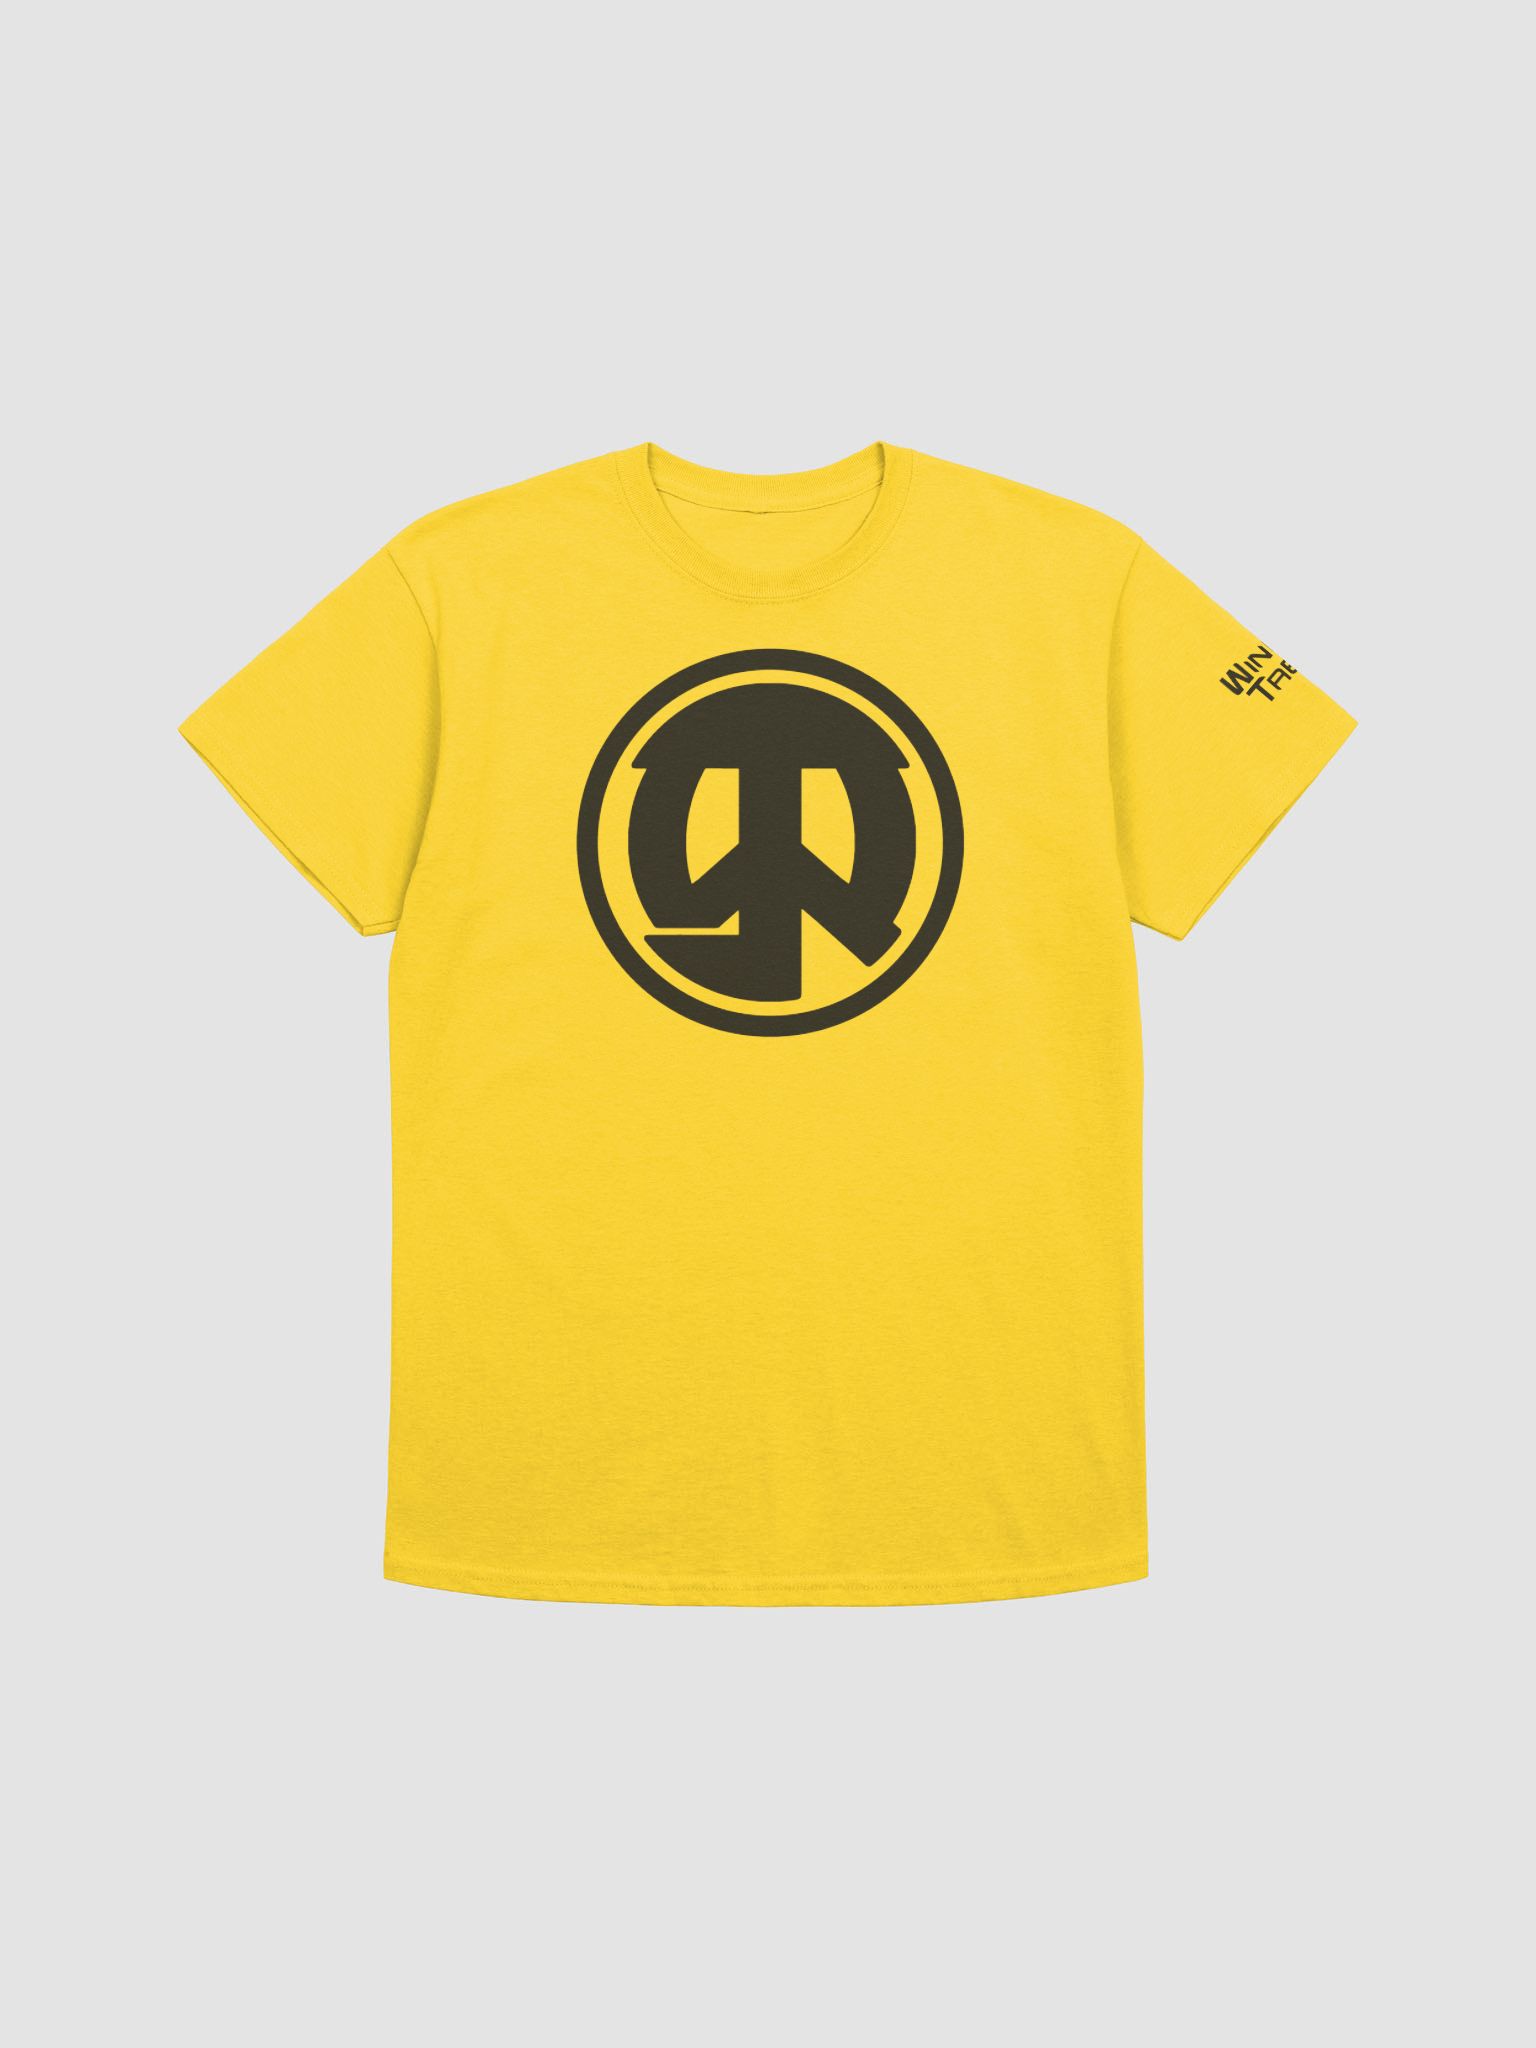 WinnieTabz T-Shirt Merch | WinnieTabz